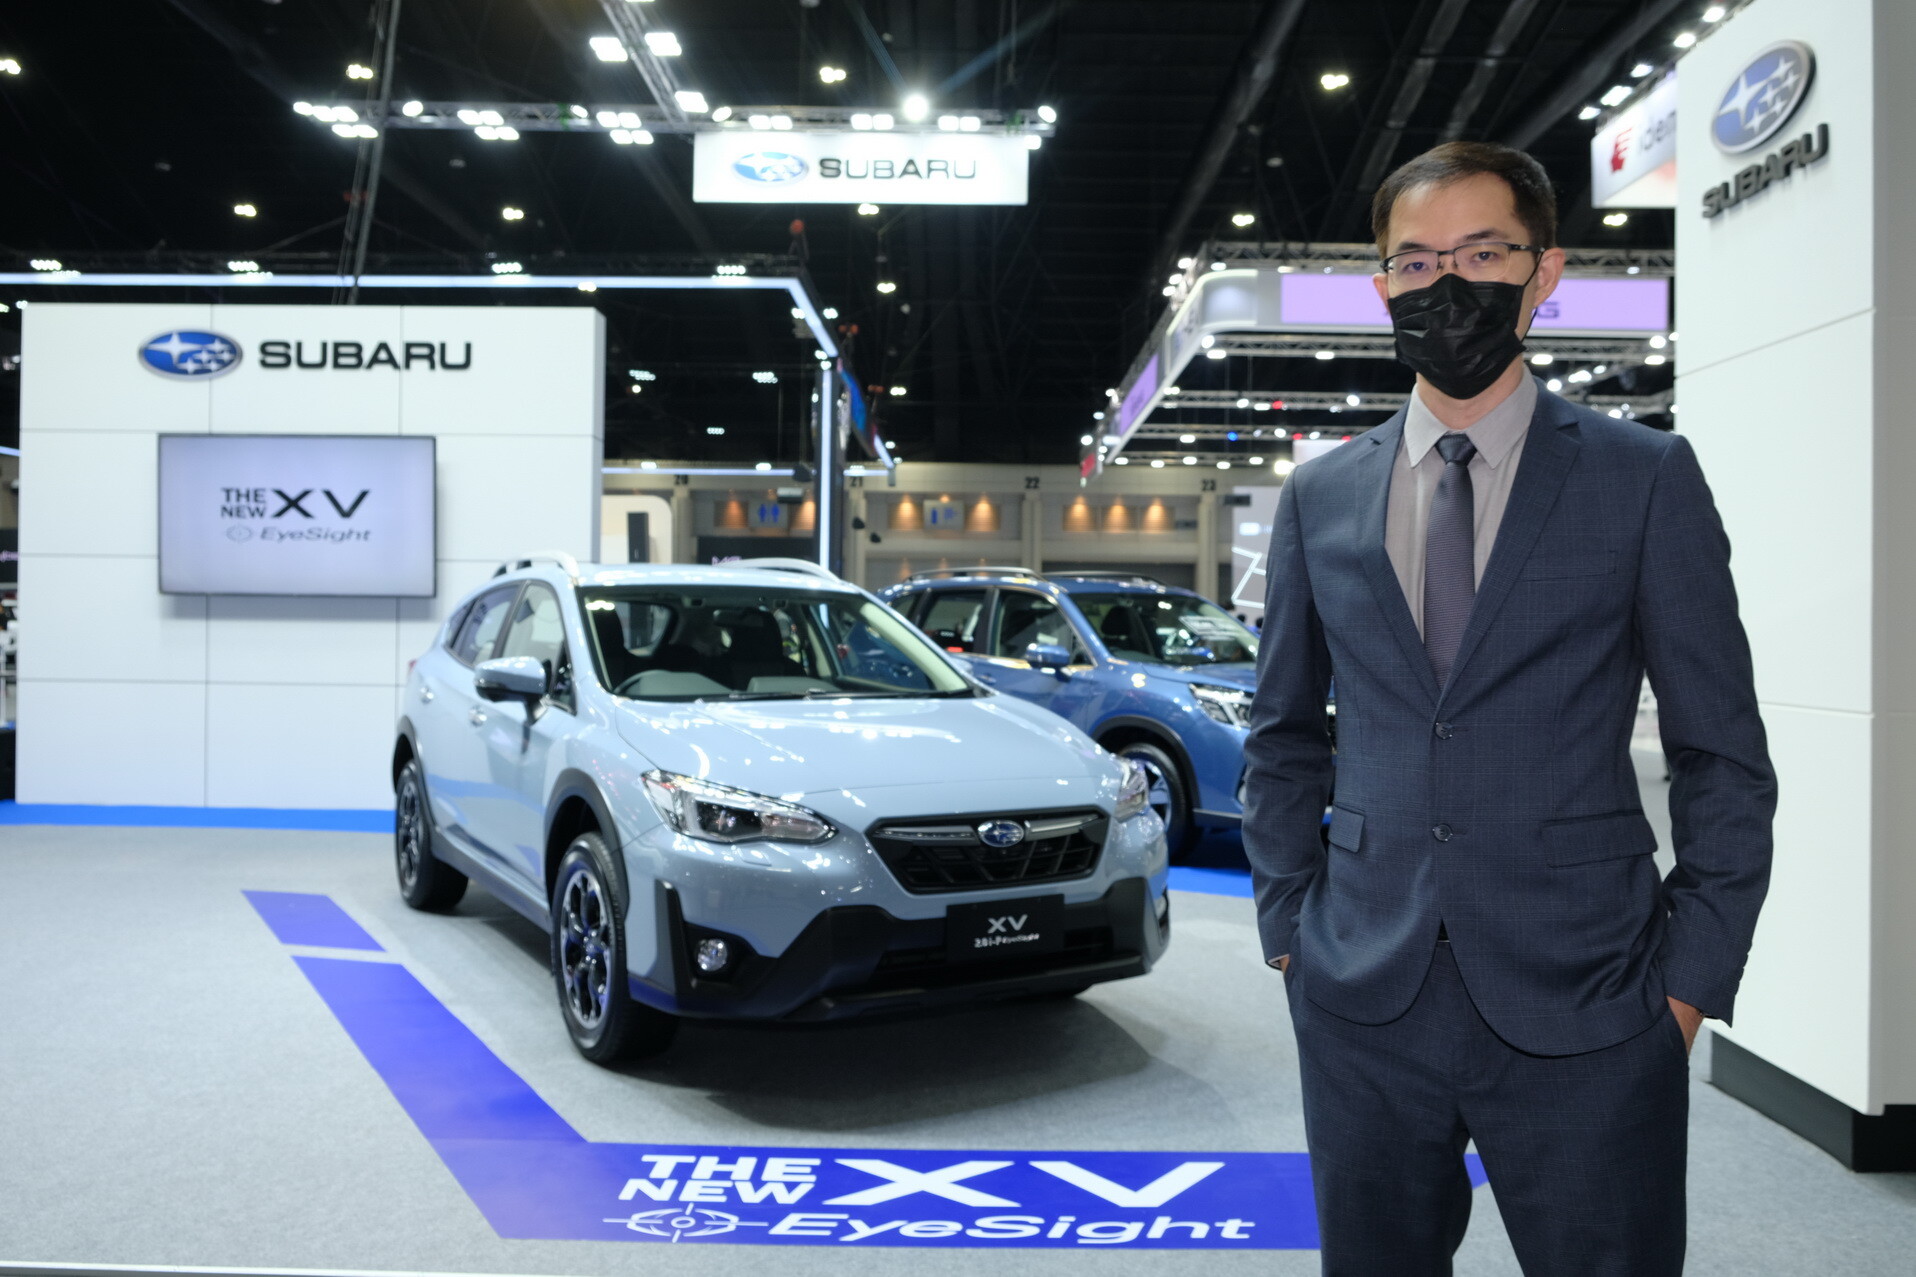 The New Subaru XV EyeSight Driver Assist เปิดตัวครั้งแรกในงานมอเตอร์เอ็กซ์โป 2021   สัมผัสประสบการณ์การขับขี่ในโลกเสมือนจริง - Subaru VR Lab พิสูจน์สมรรถนะนวัตกรรมความปลอดภัยกว่า 100 รายการ